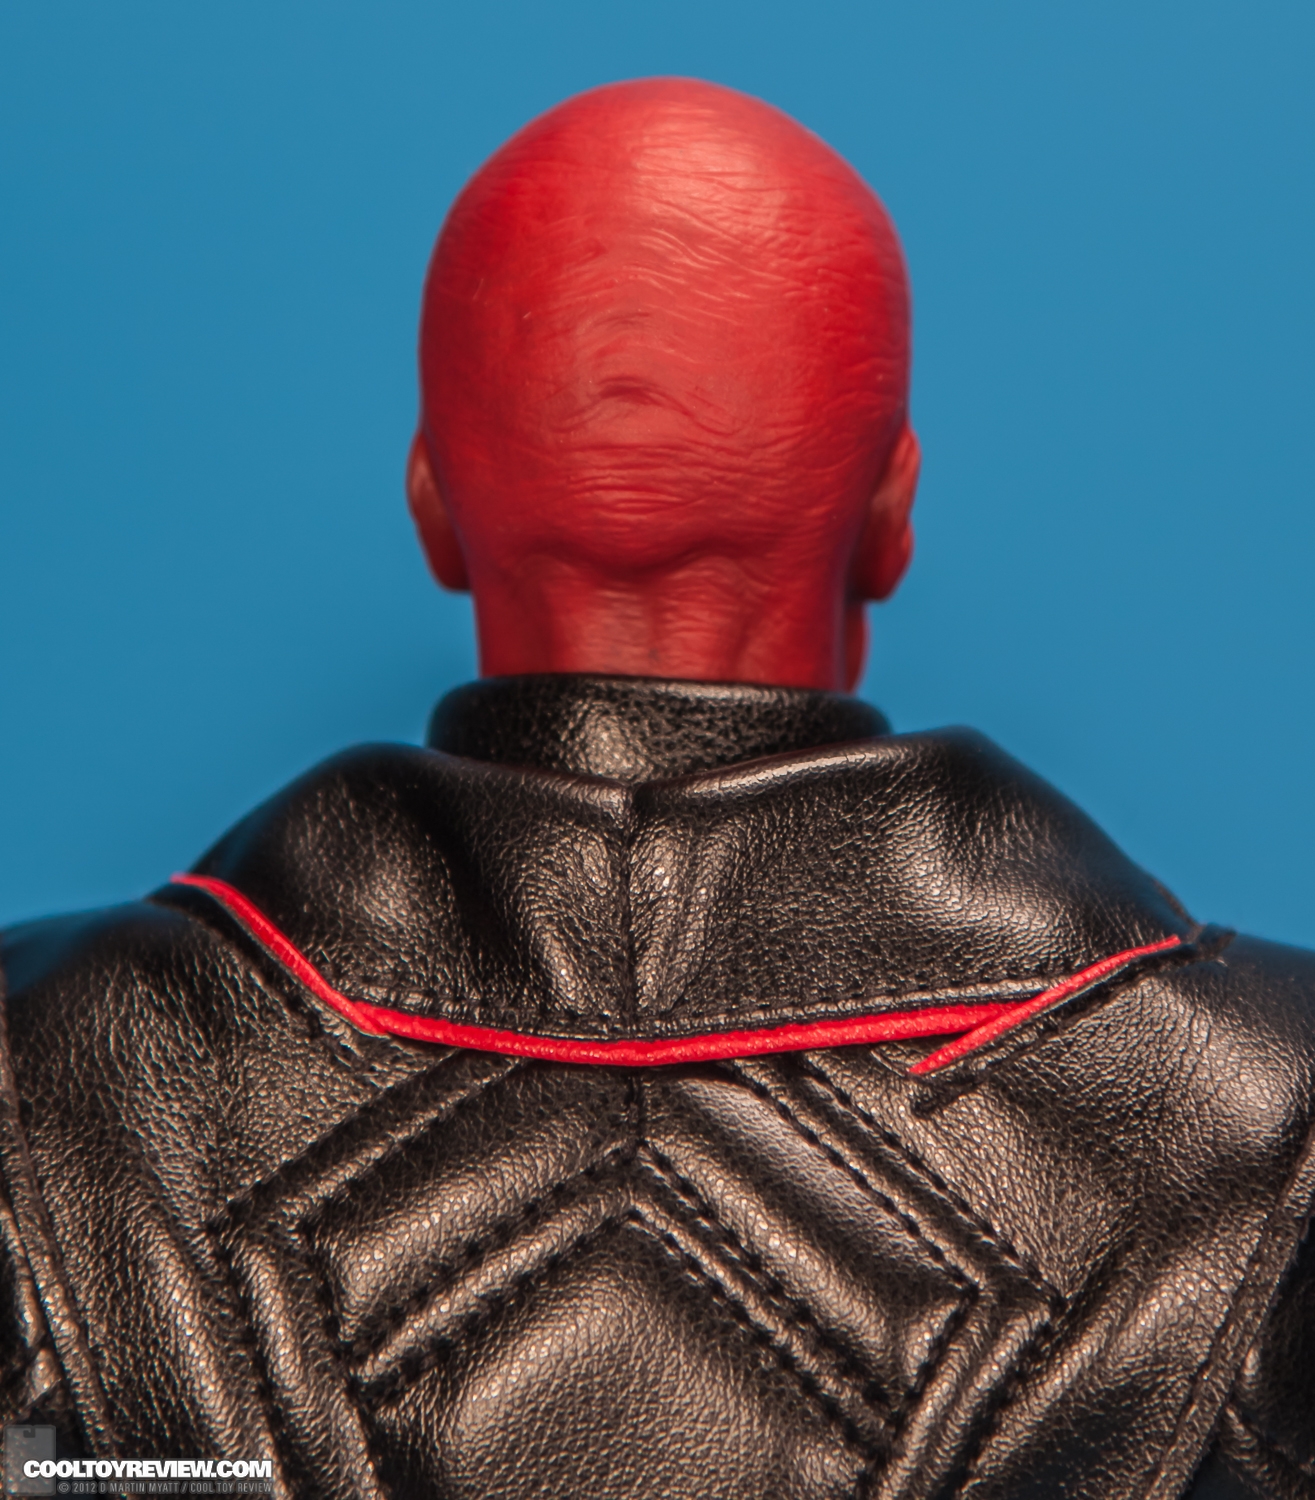 Red_Skull_Captain_America_First_Avenger_Hot_Toys-16.jpg